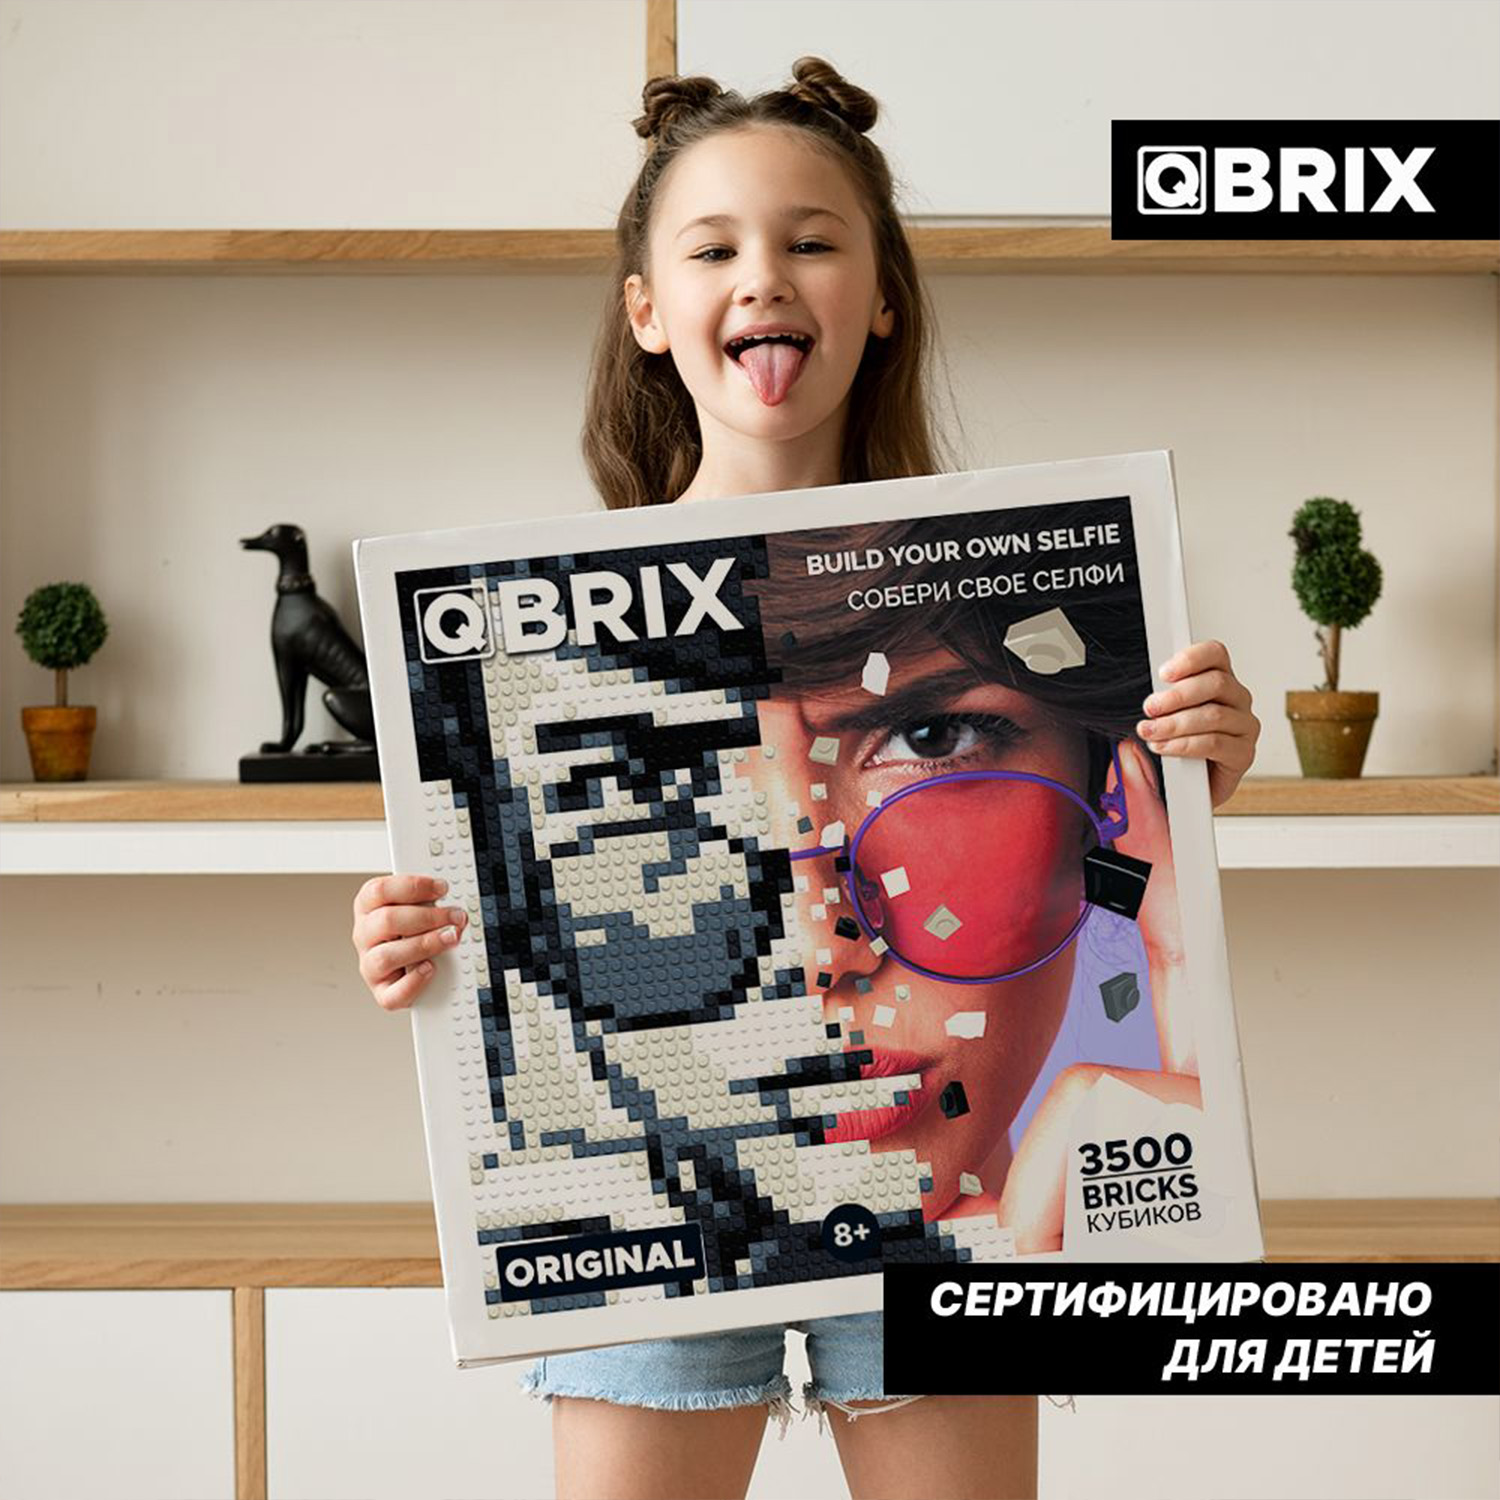 Фото-конструктор Qbrix Original 50001 - фото 7